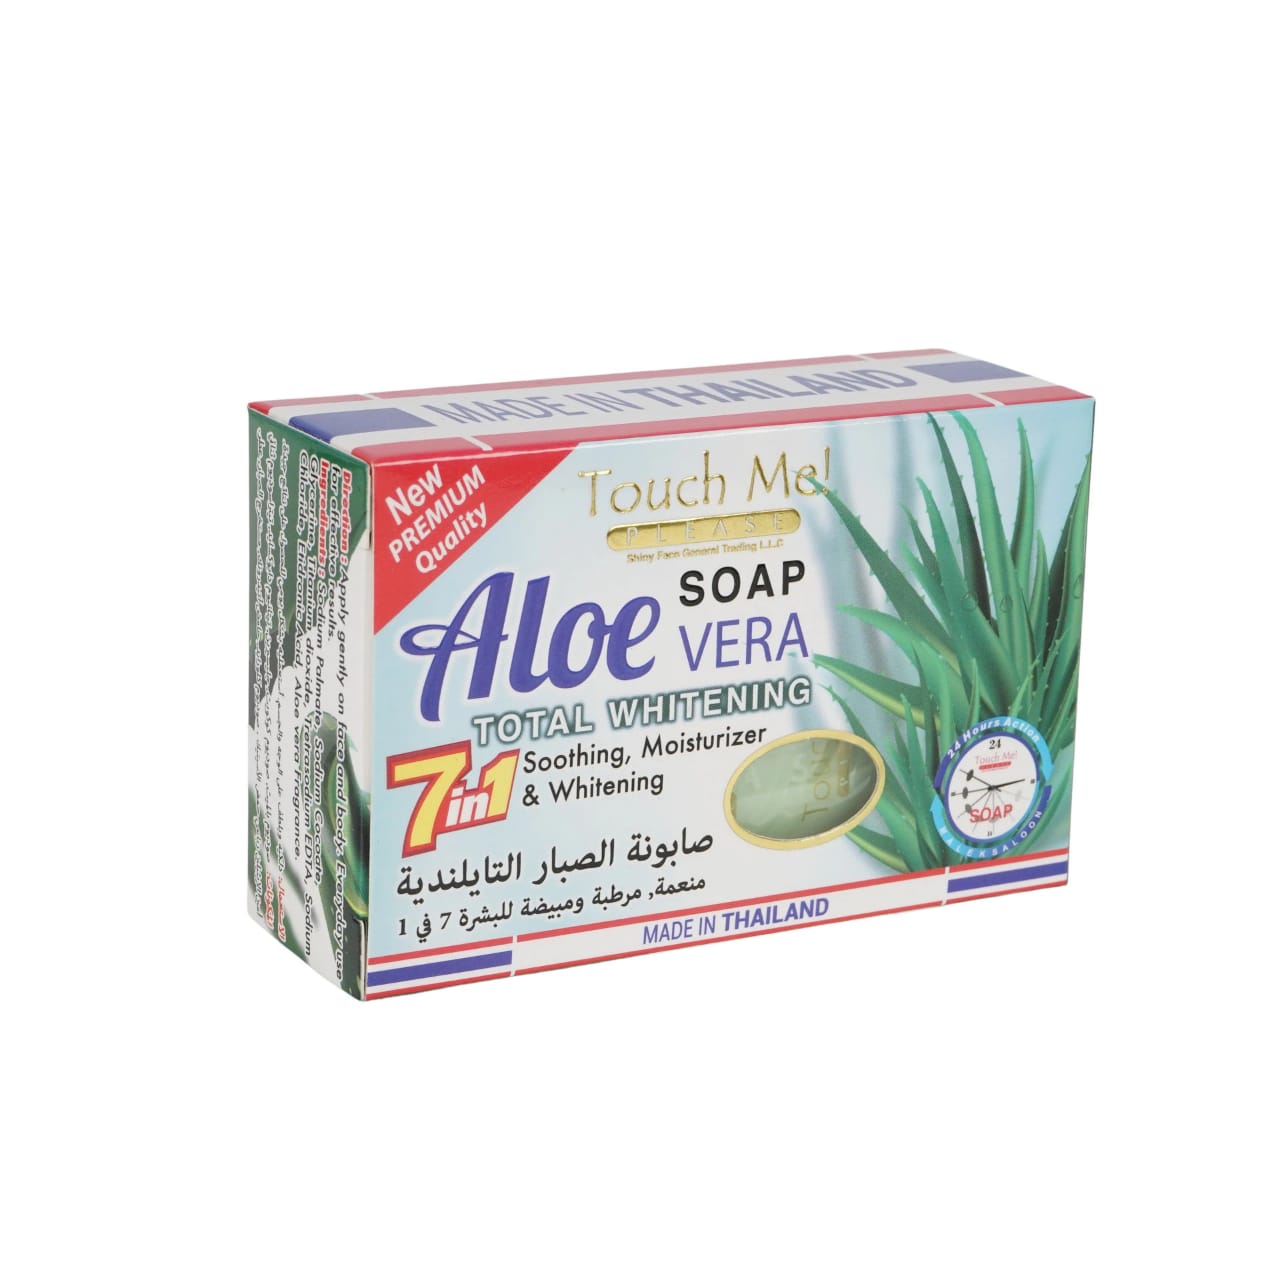 Touch Me Please Aloe Vera Soap